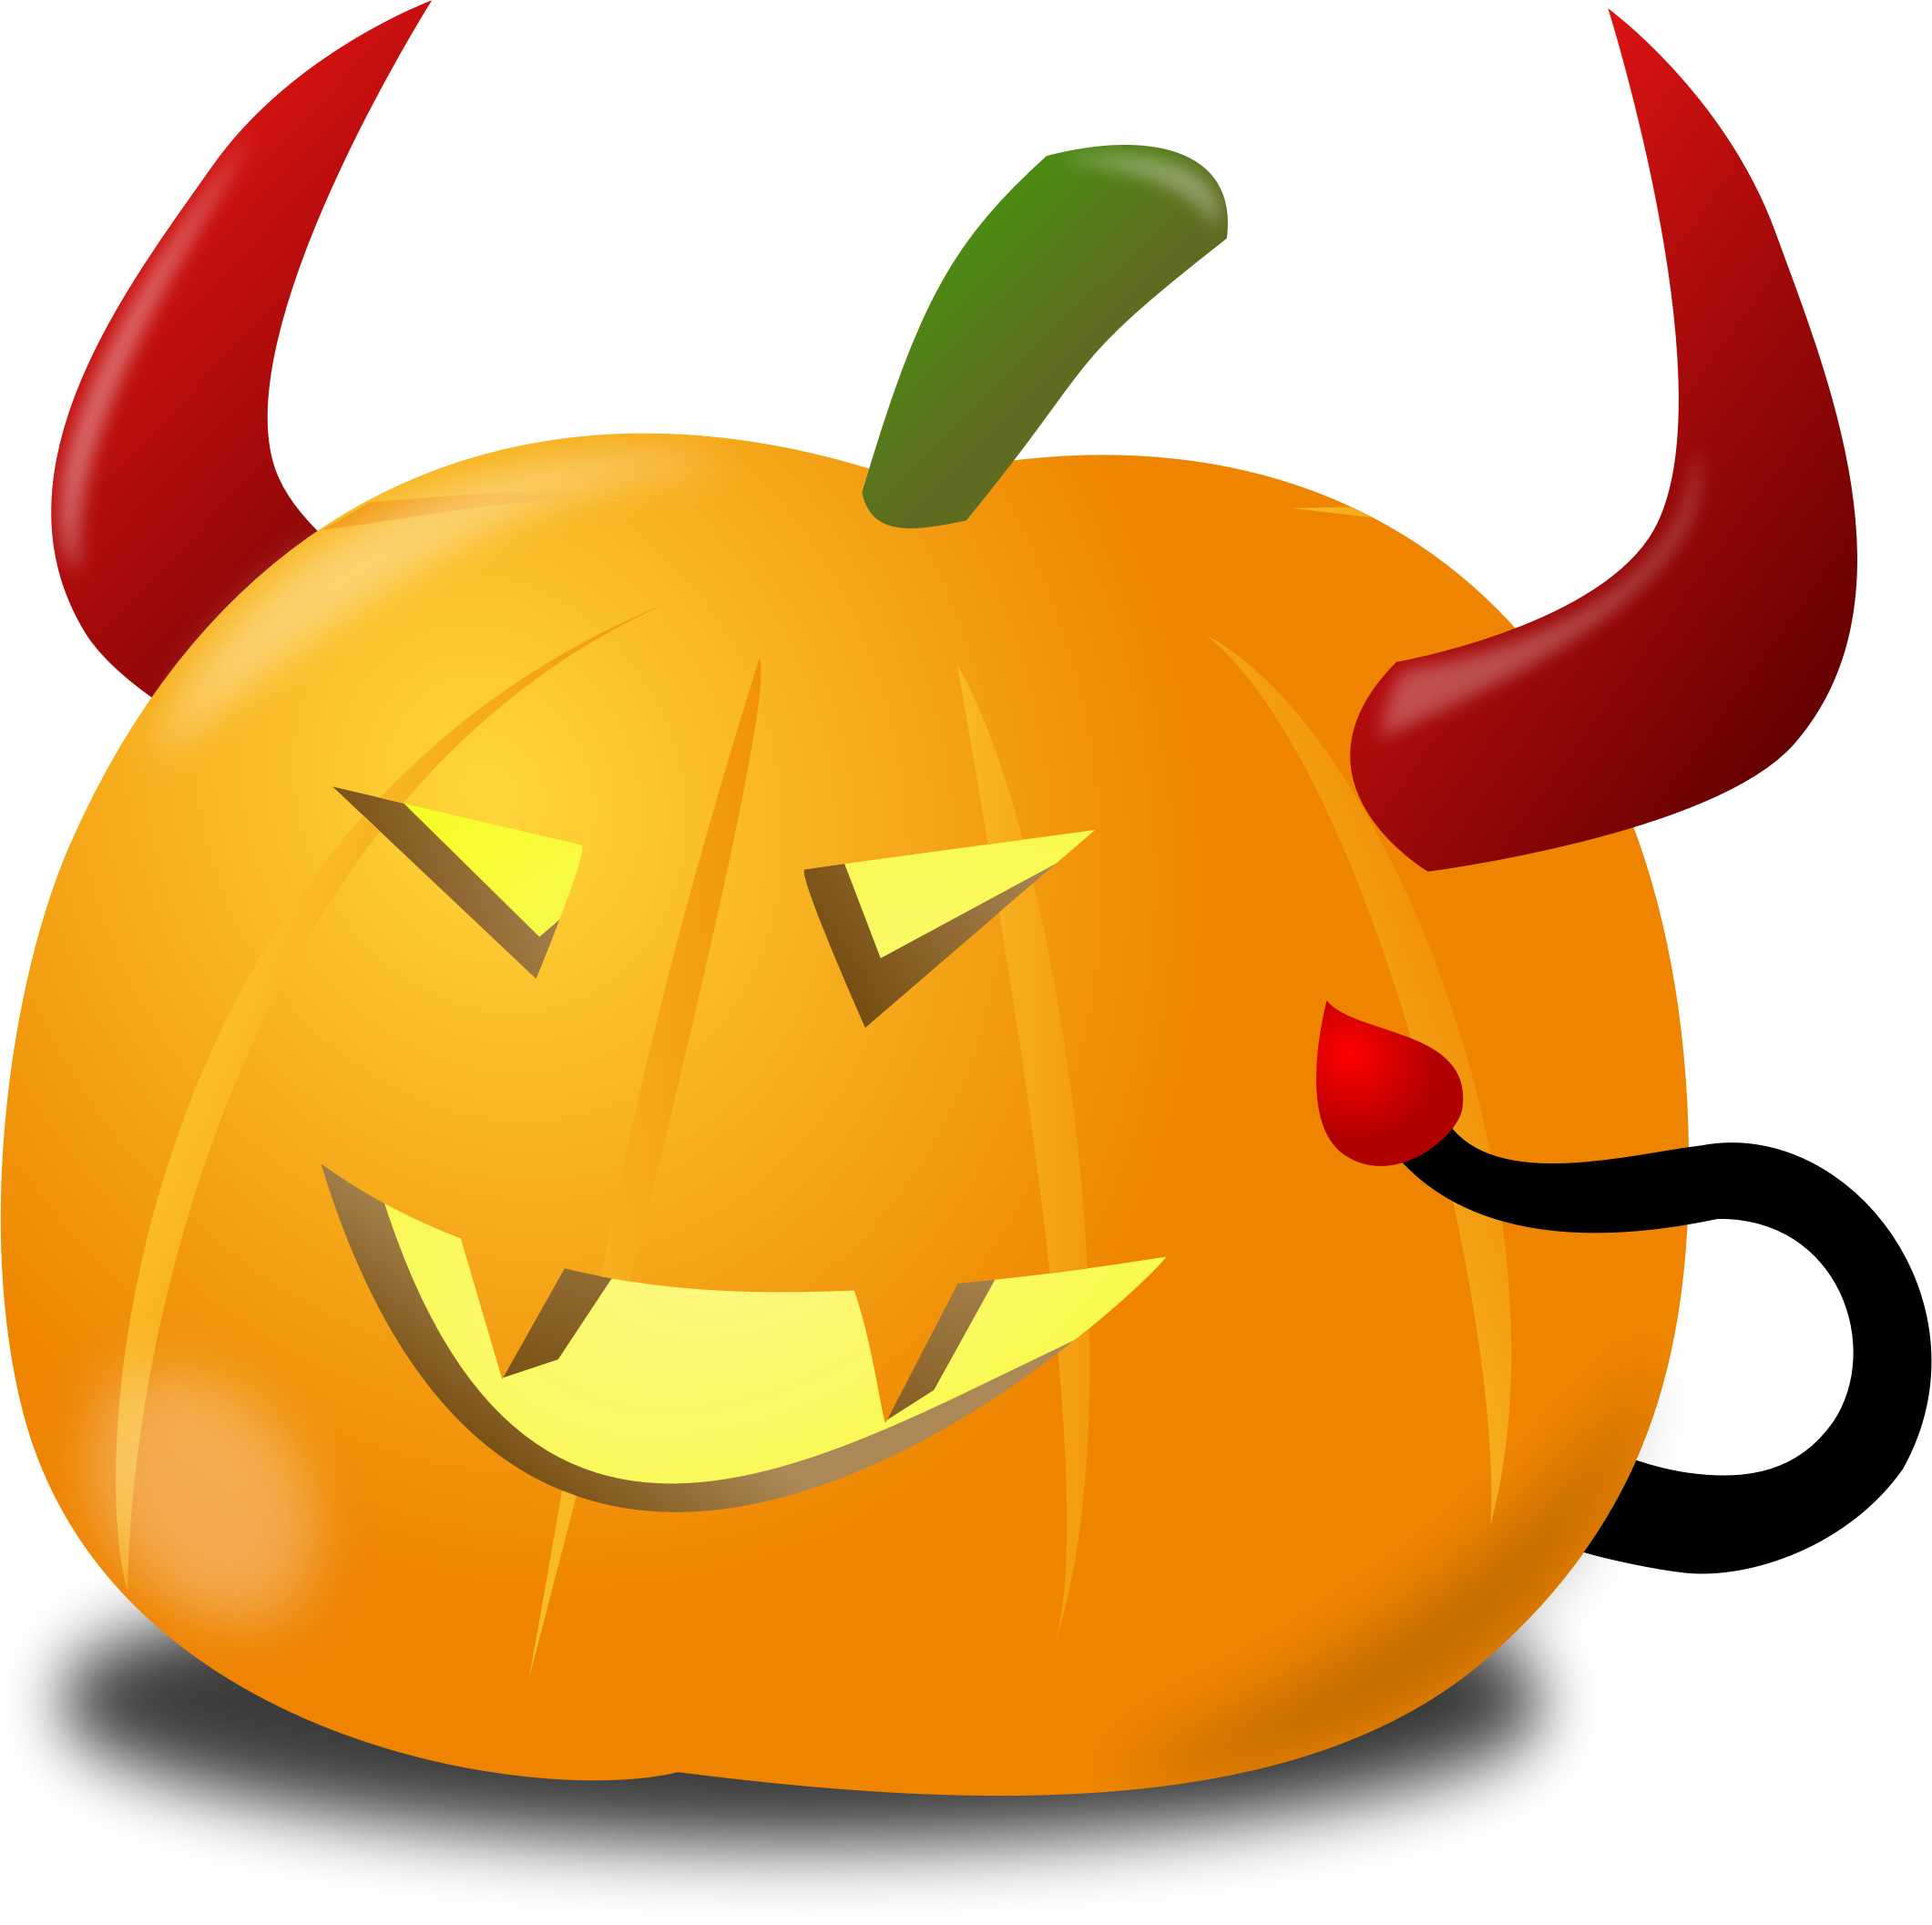 Devilish Pumpkin Cartoon Vector